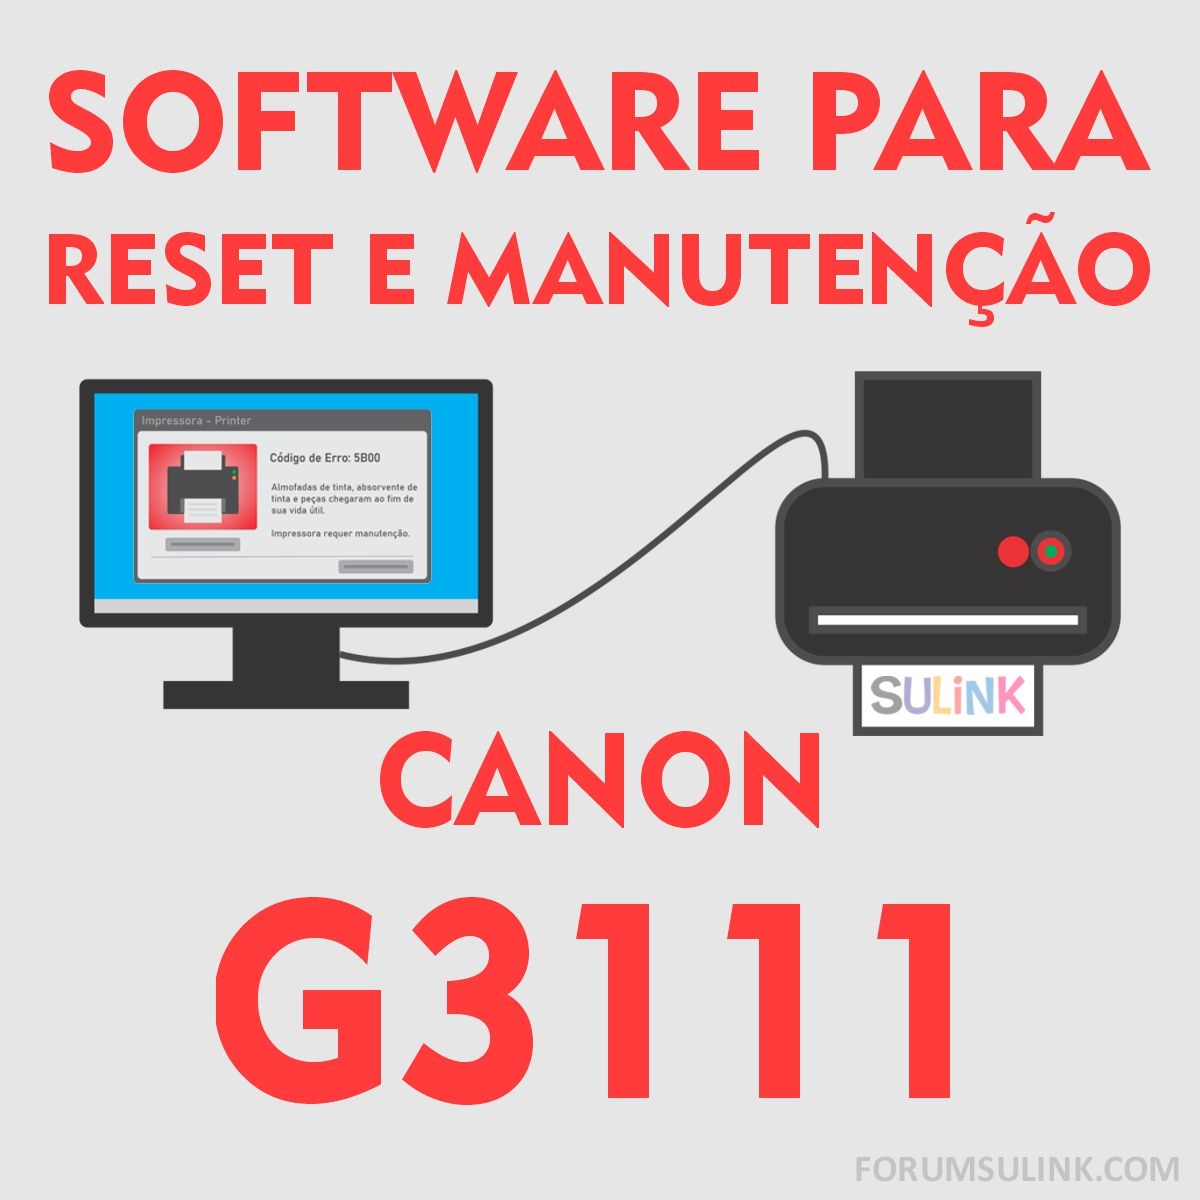 Canon G3111 | Software para Reset das Almofadas e Manutenção